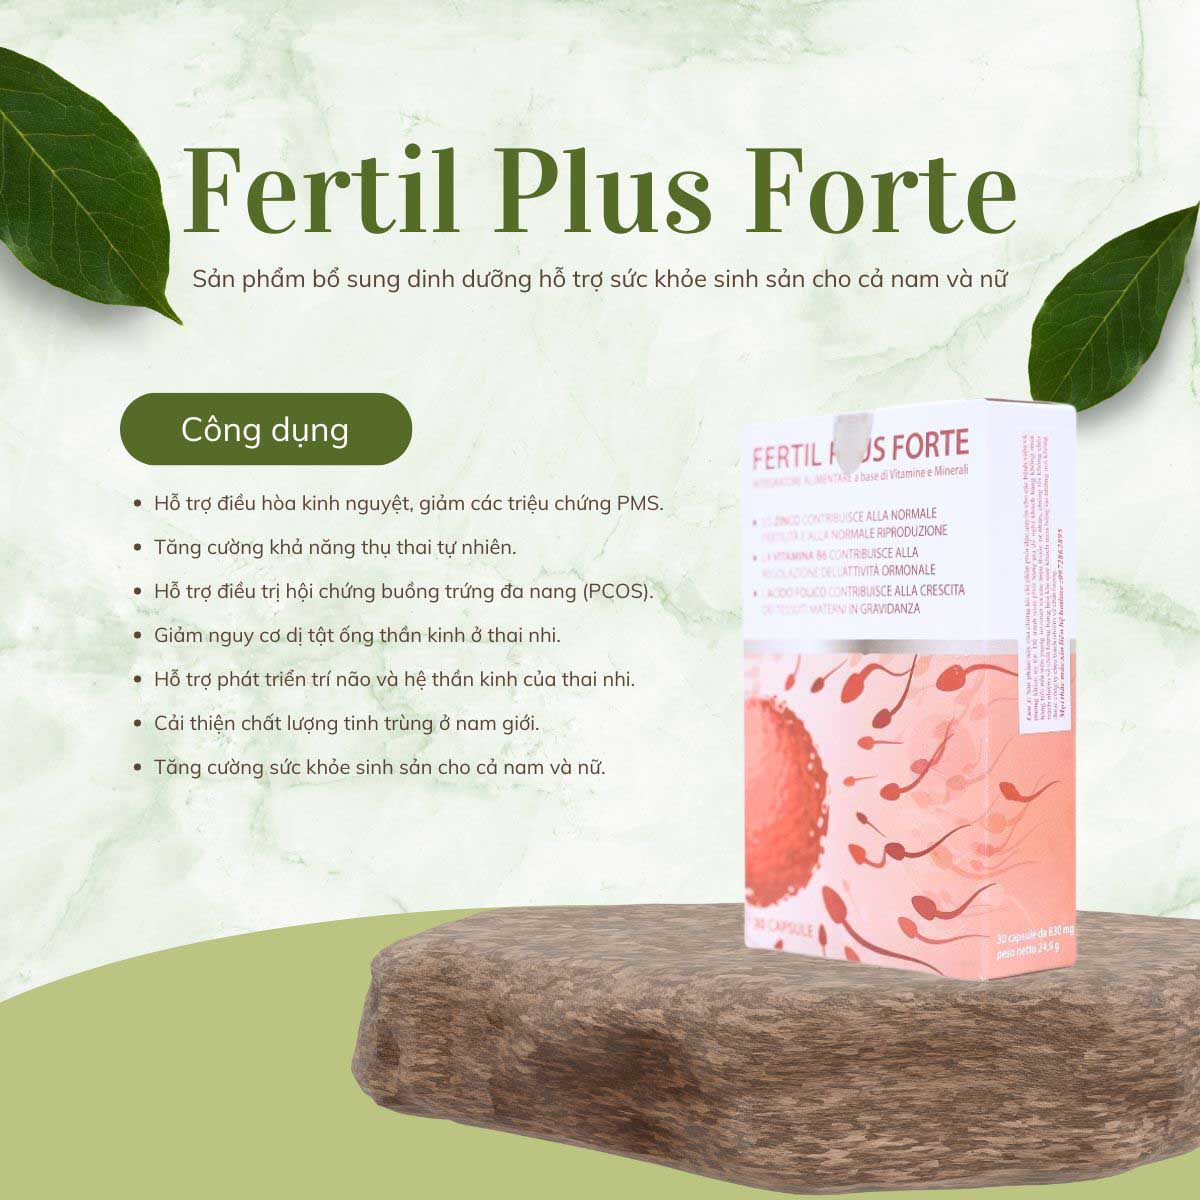 Fertil Plus Forte